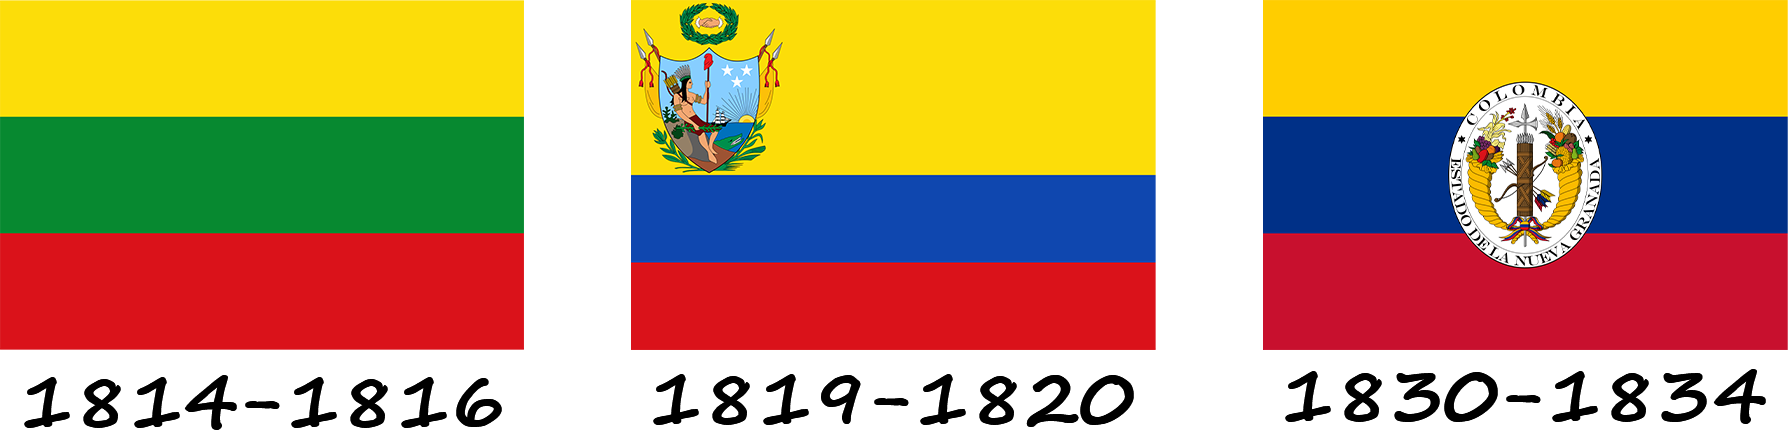 Історія прапору Колумбії